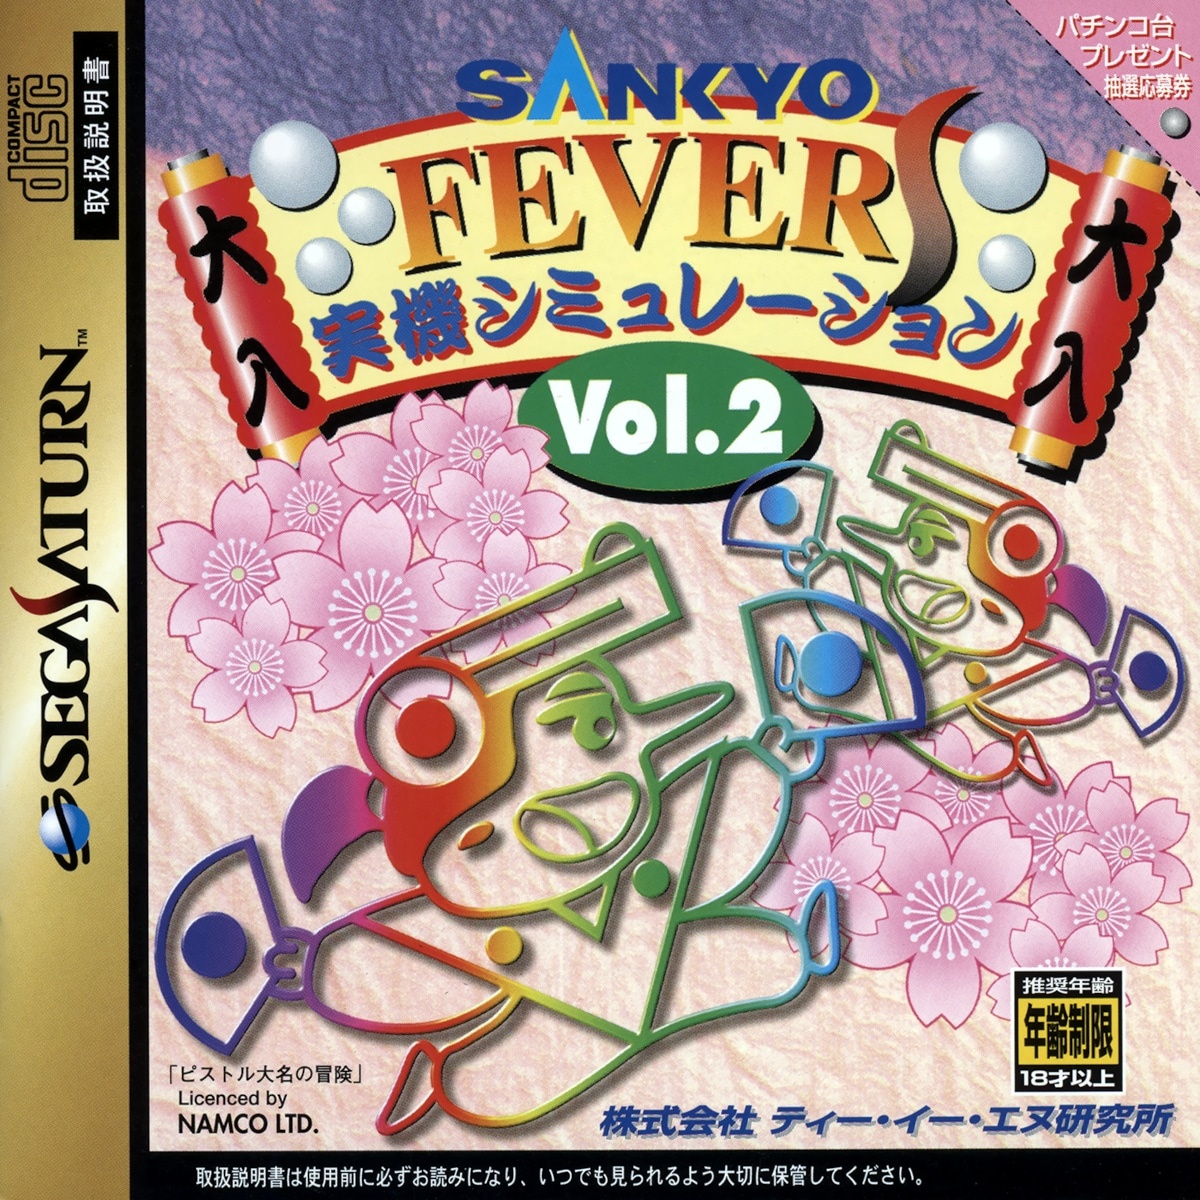 Capa do jogo Sankyo Fever Jikki Simulation S Vol. 2